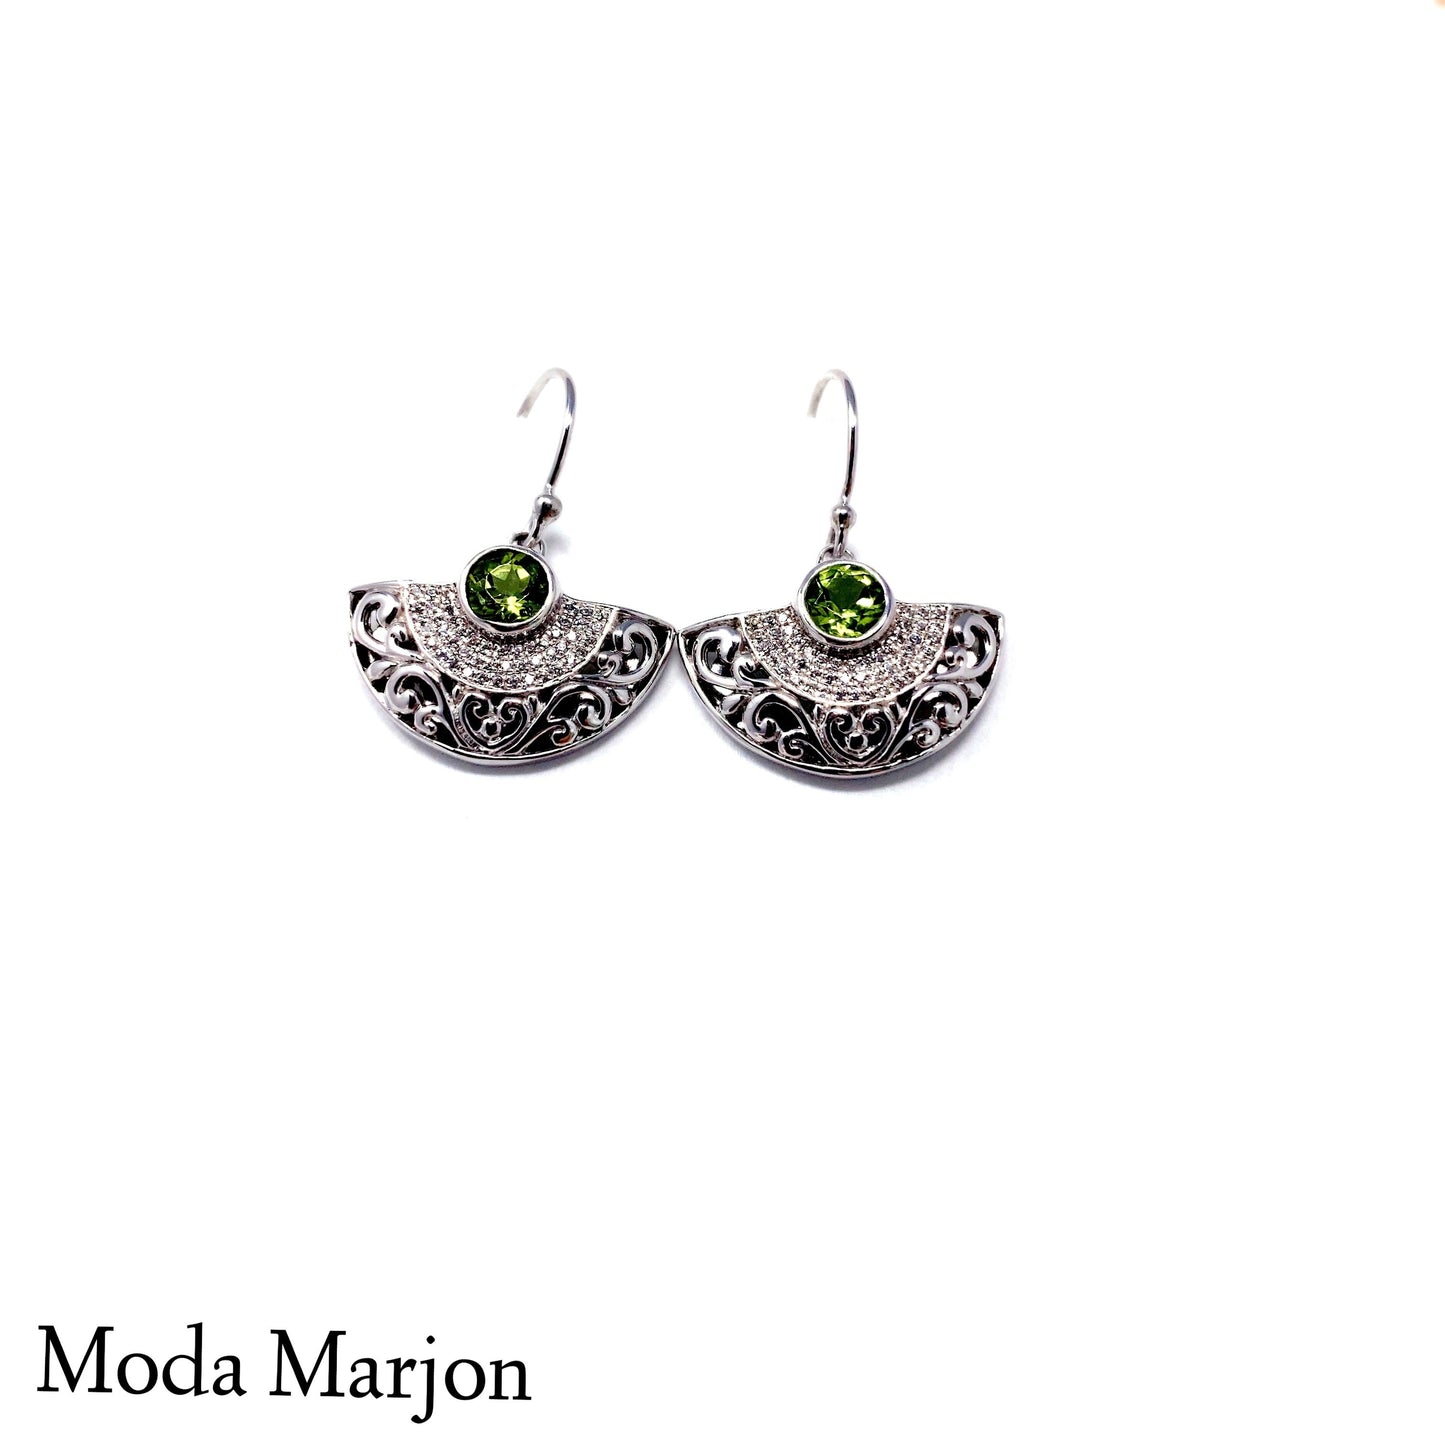 Moda Marjon Classic Half Moon Scroll Pattern Pendant/Earring Set - Moda Marjon 